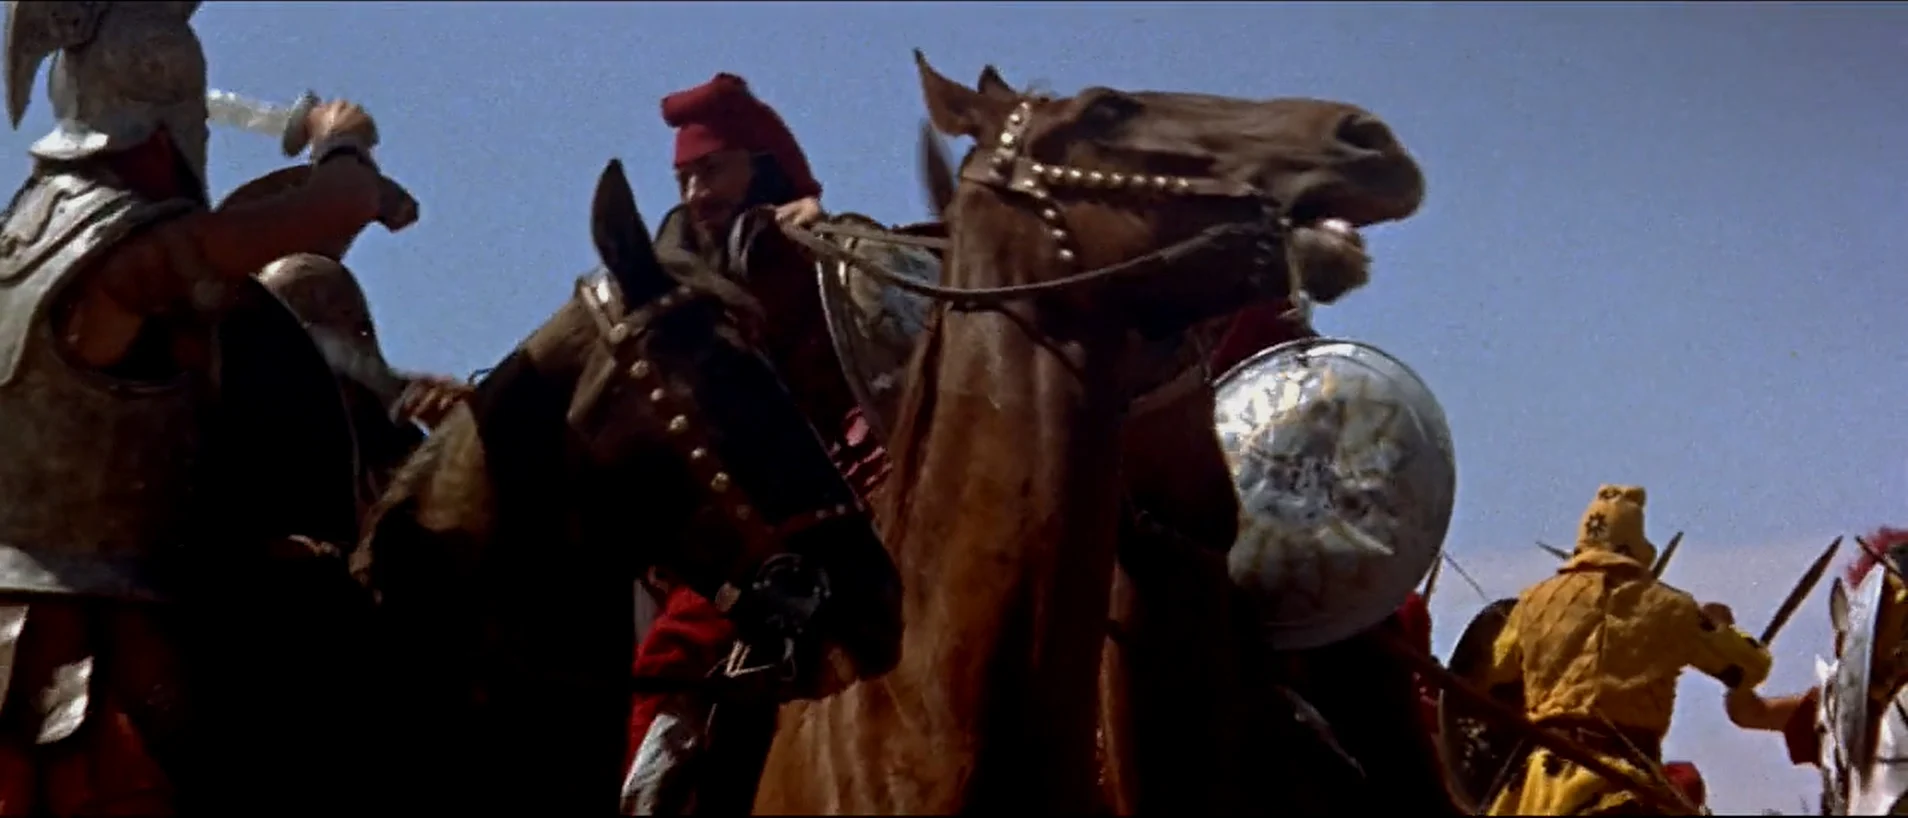 片中的格拉尼库斯河之战，骑砍场景看起来很……假，毕竟当时特效水平不佳